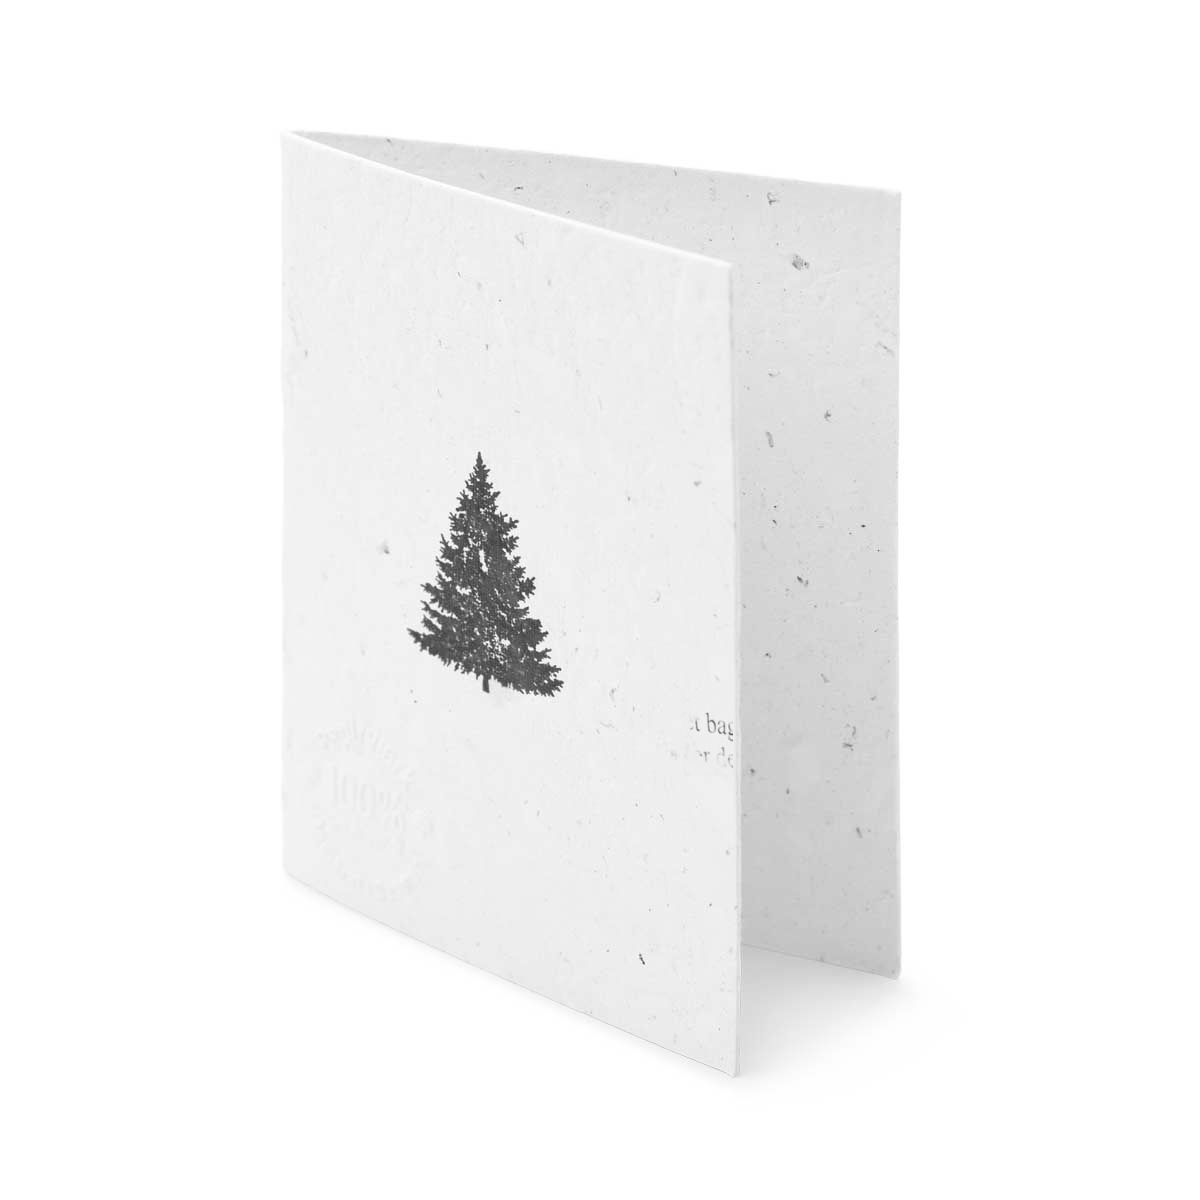 Juletræet - 3 stk - to-sidet (6,5x9 cm) - Papirværk